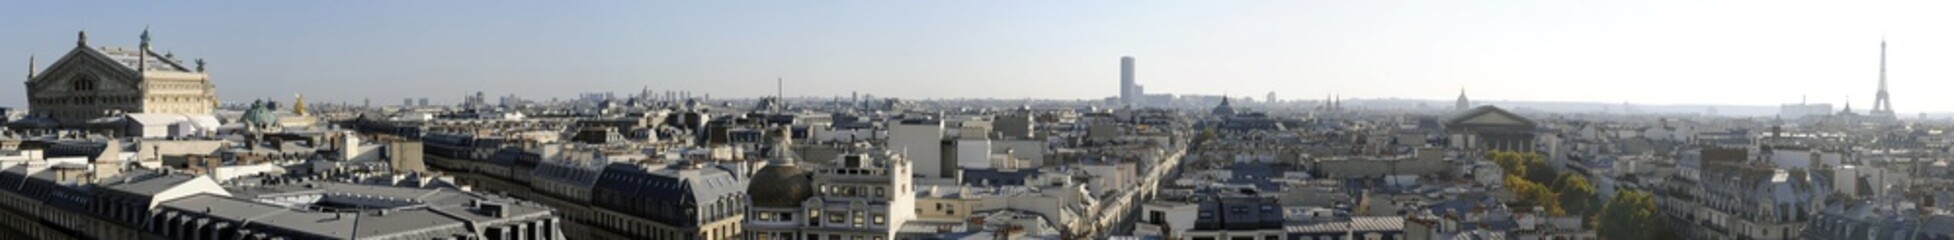 Vue panoramique de Paris en Haute definition - France